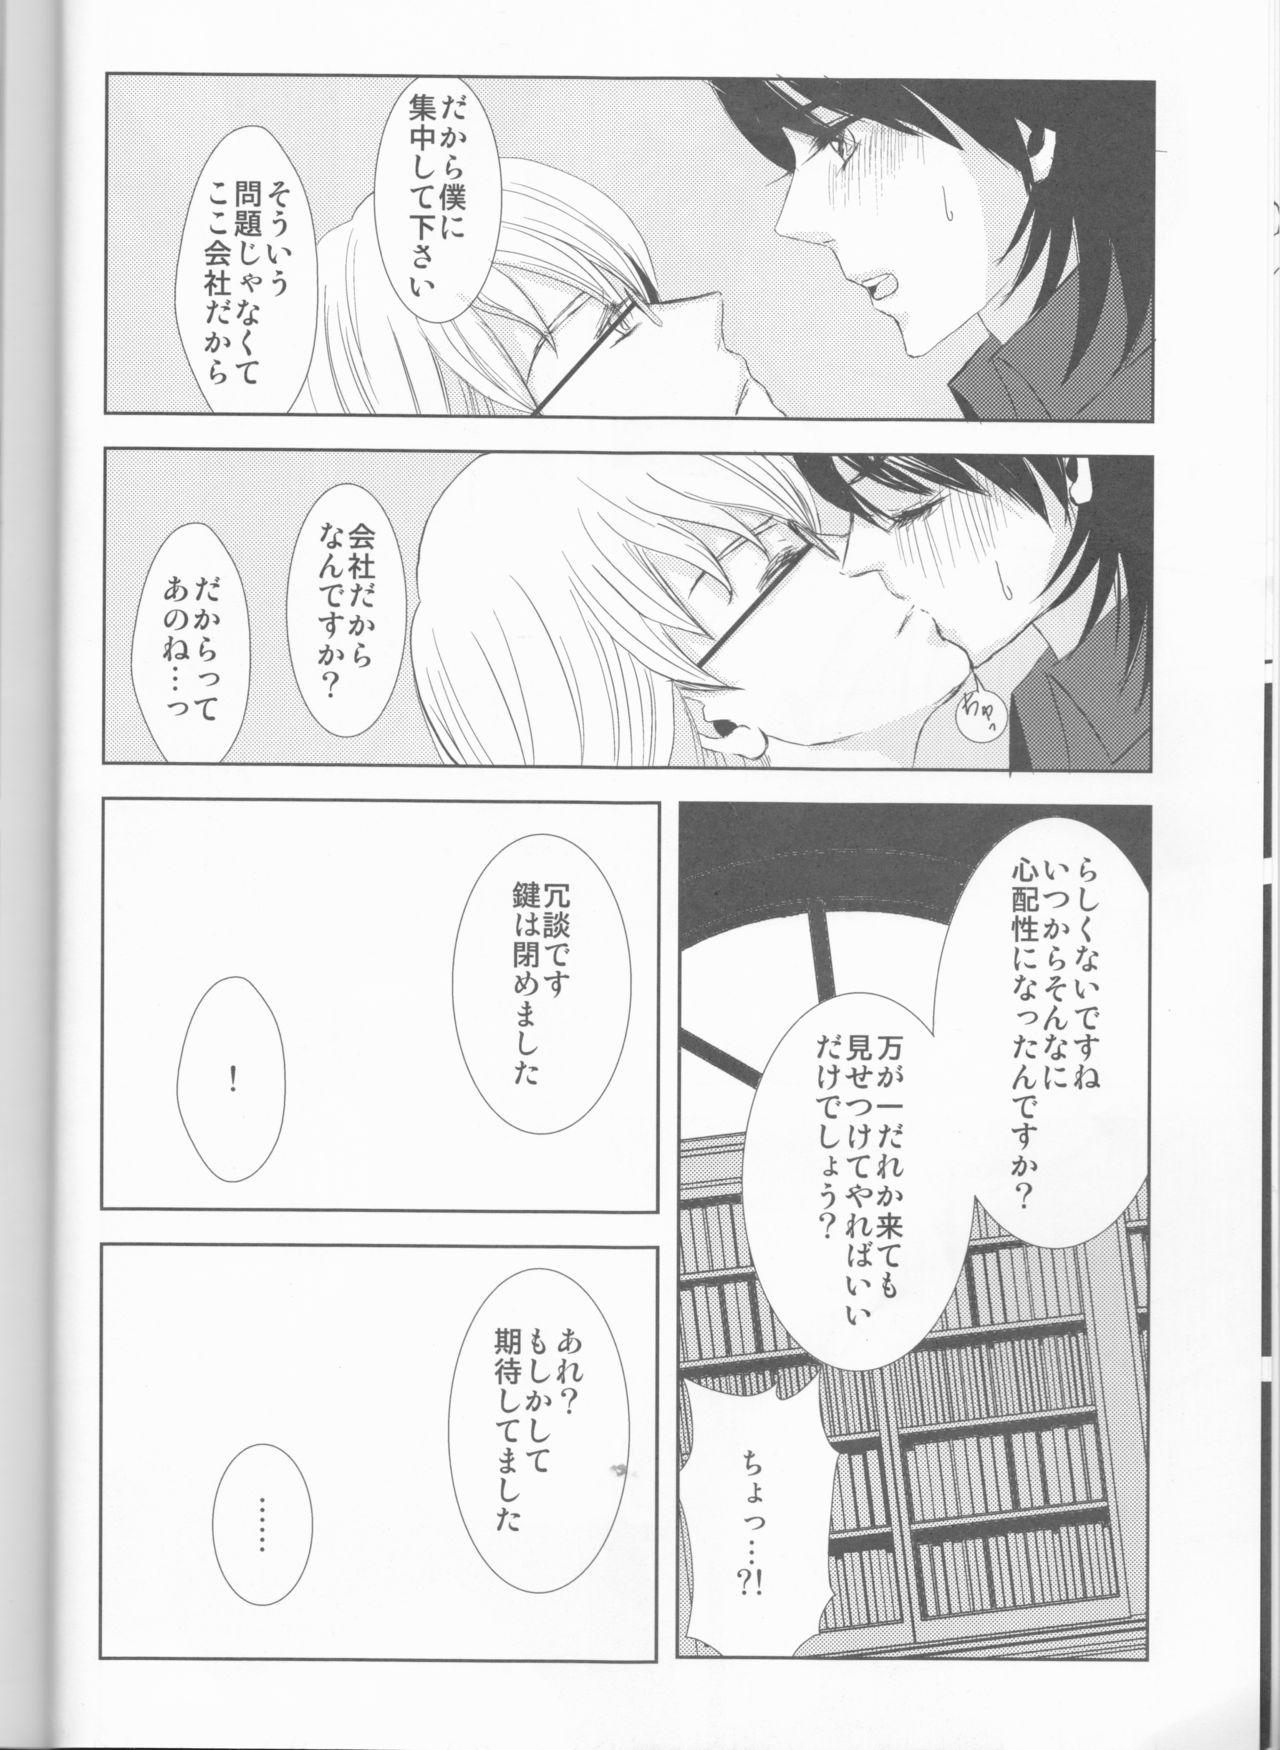 Chupada Itsuka wa inaku naru kimi e - Tiger and bunny Cfnm - Page 7